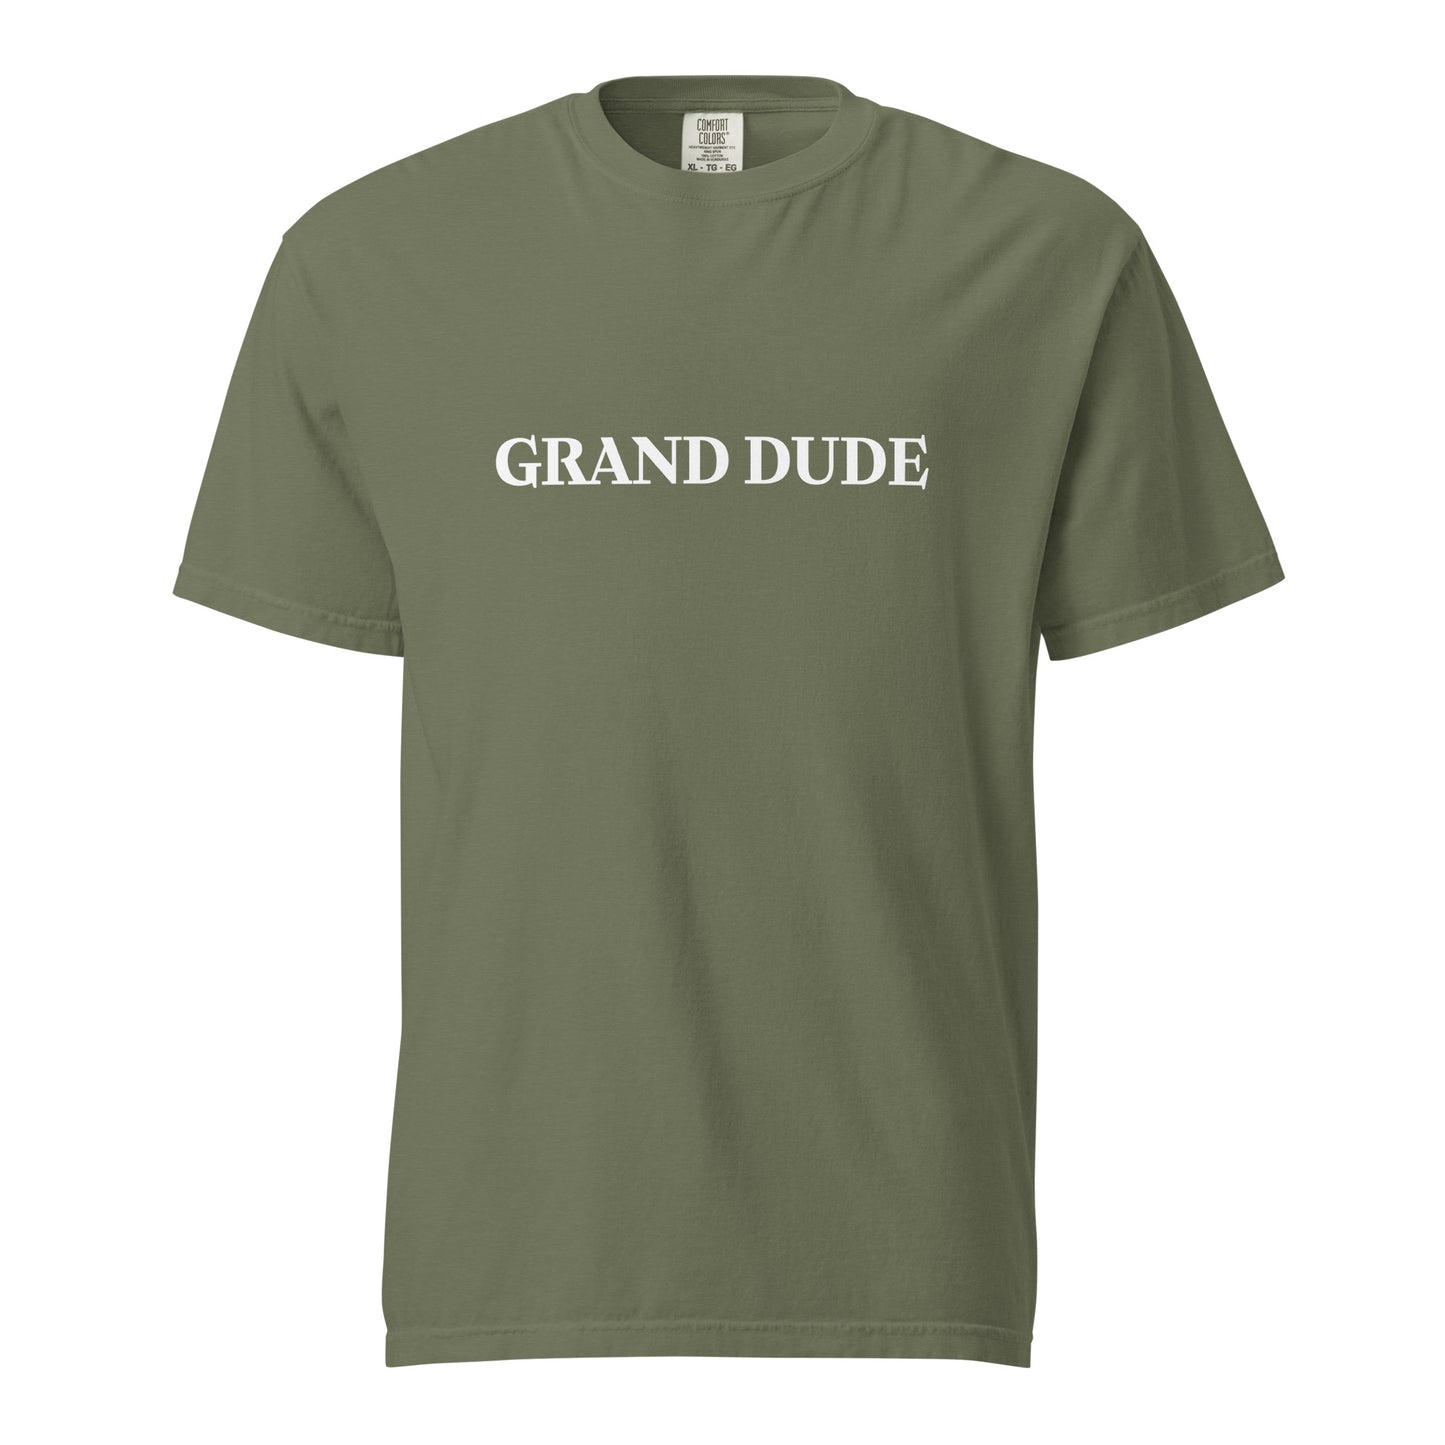 Grand Dude garment-dyed heavyweight t-shirt